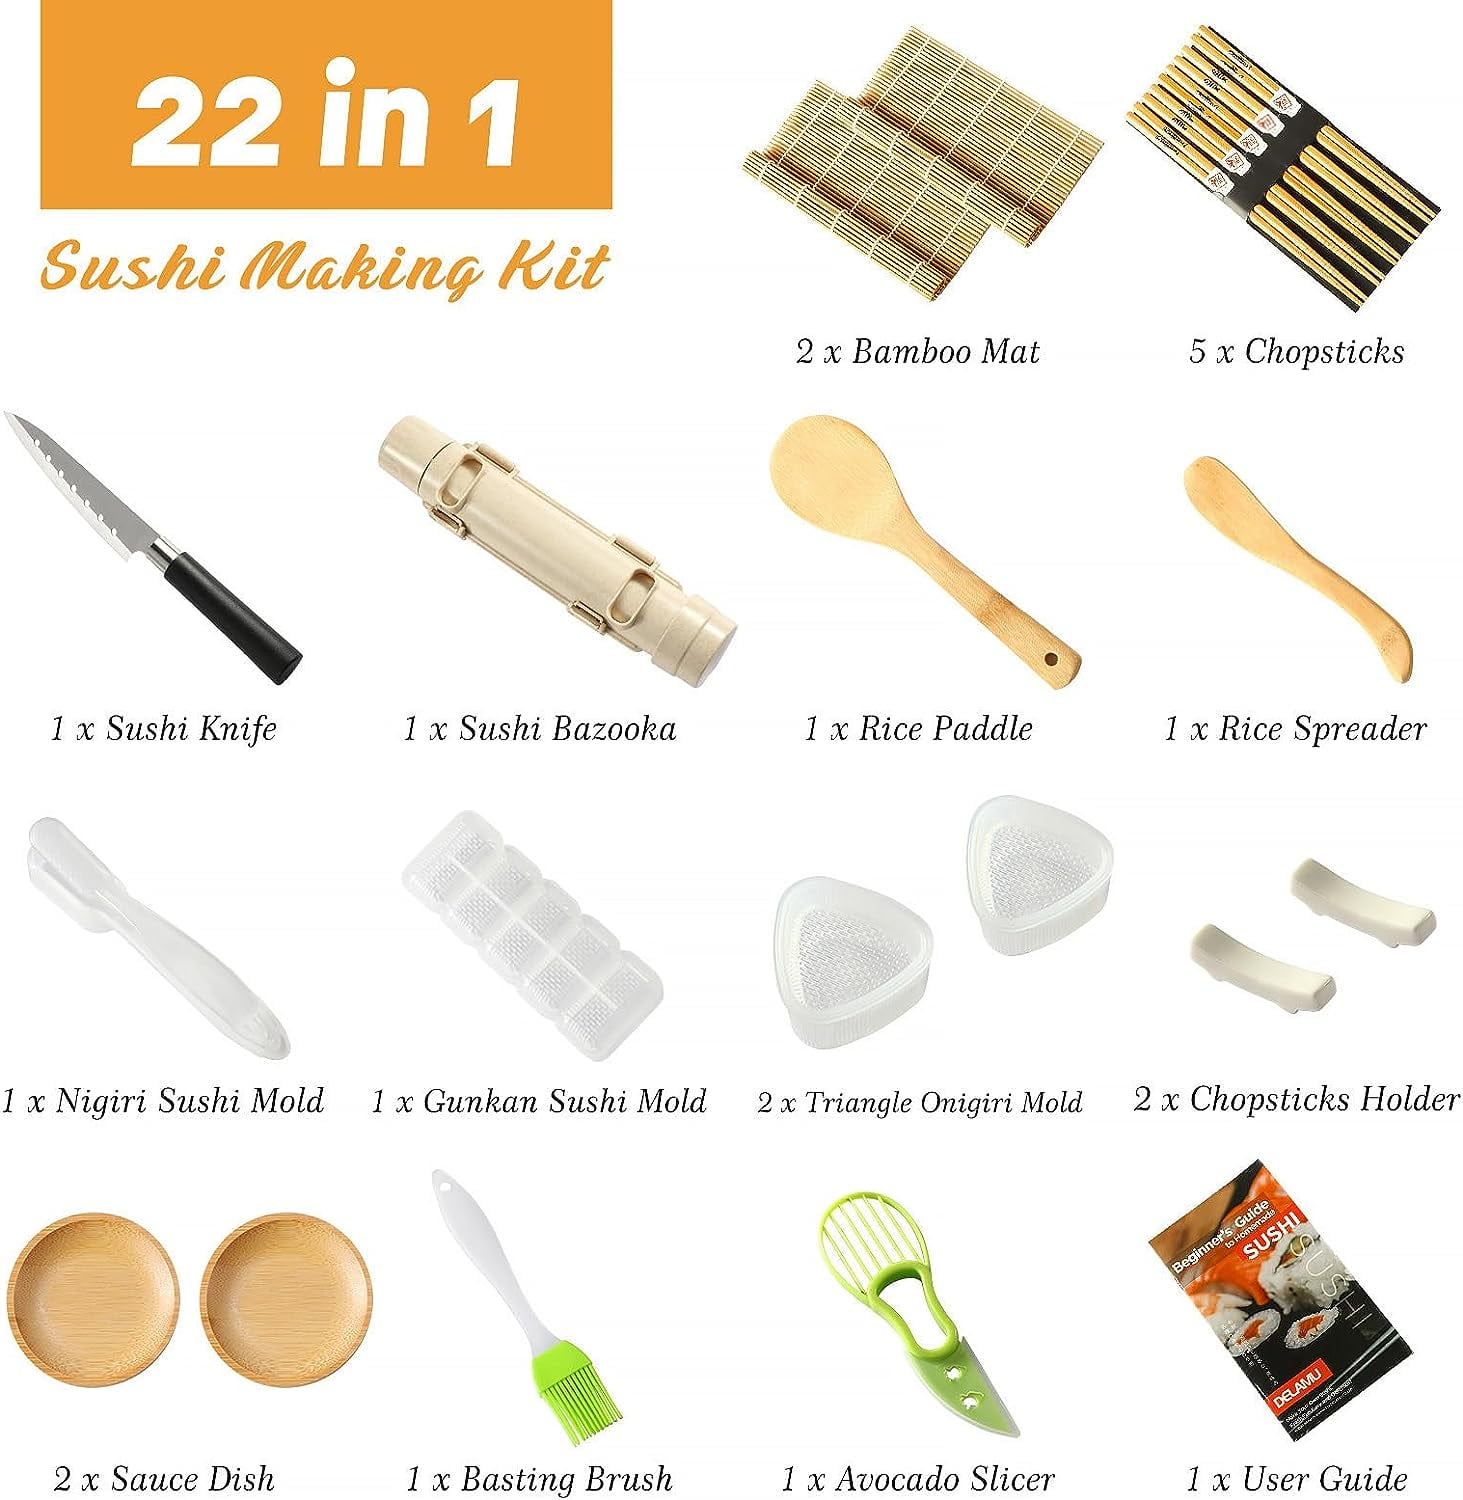 Sushedo - Professional sushi maker kit bazooka: Instructions